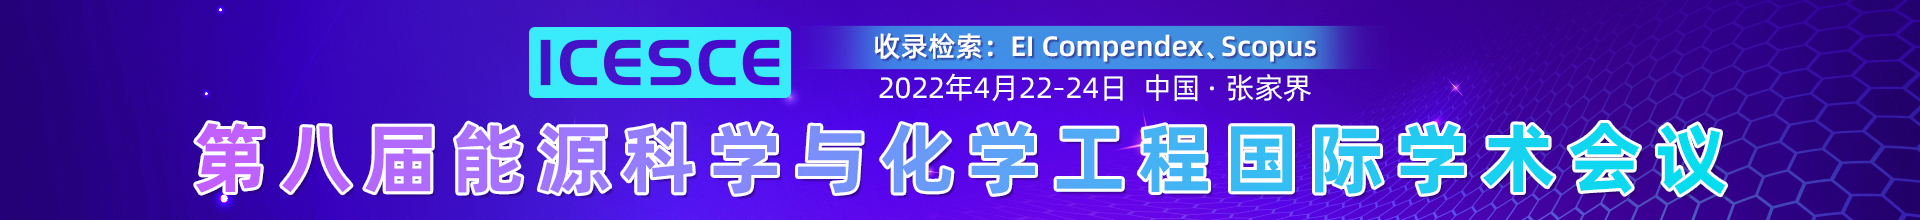 4月张家界-ICESCE-2022--学术会议云PC端1920x220-陈军-20220110.jpg